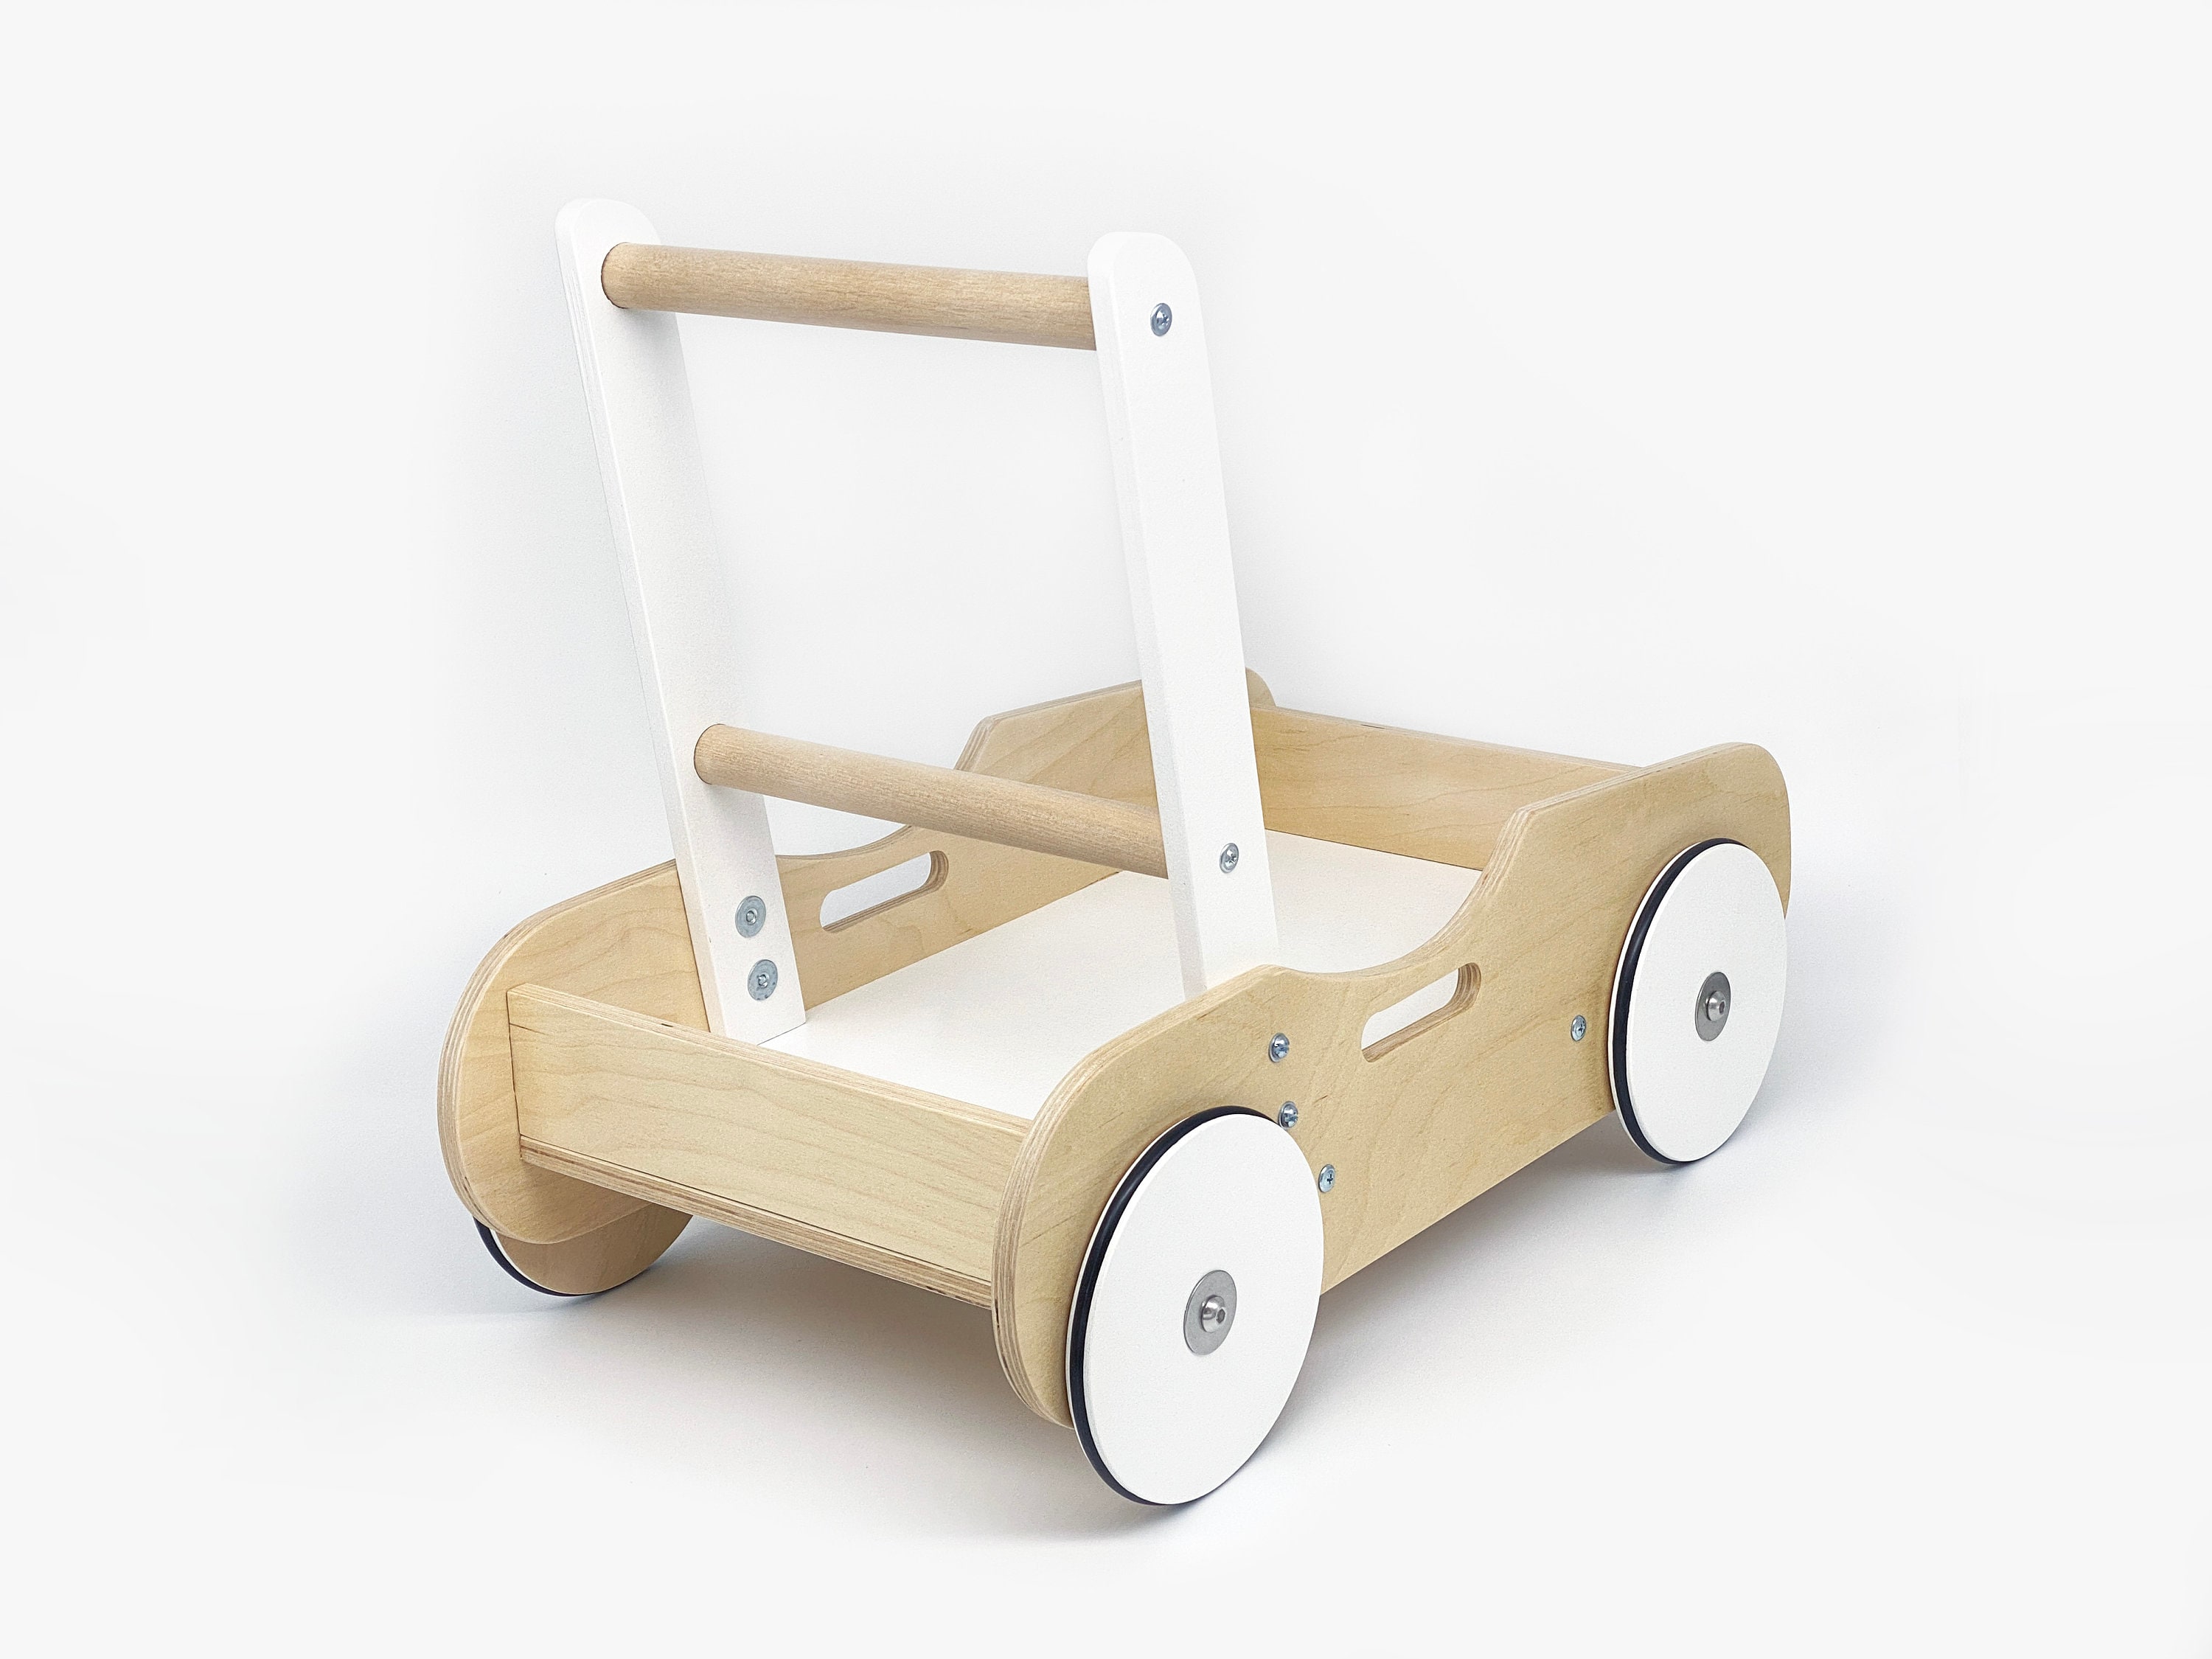 Schiebewagen aus Holz, Montessori-Spielzeug für ein einjähriges Kinder